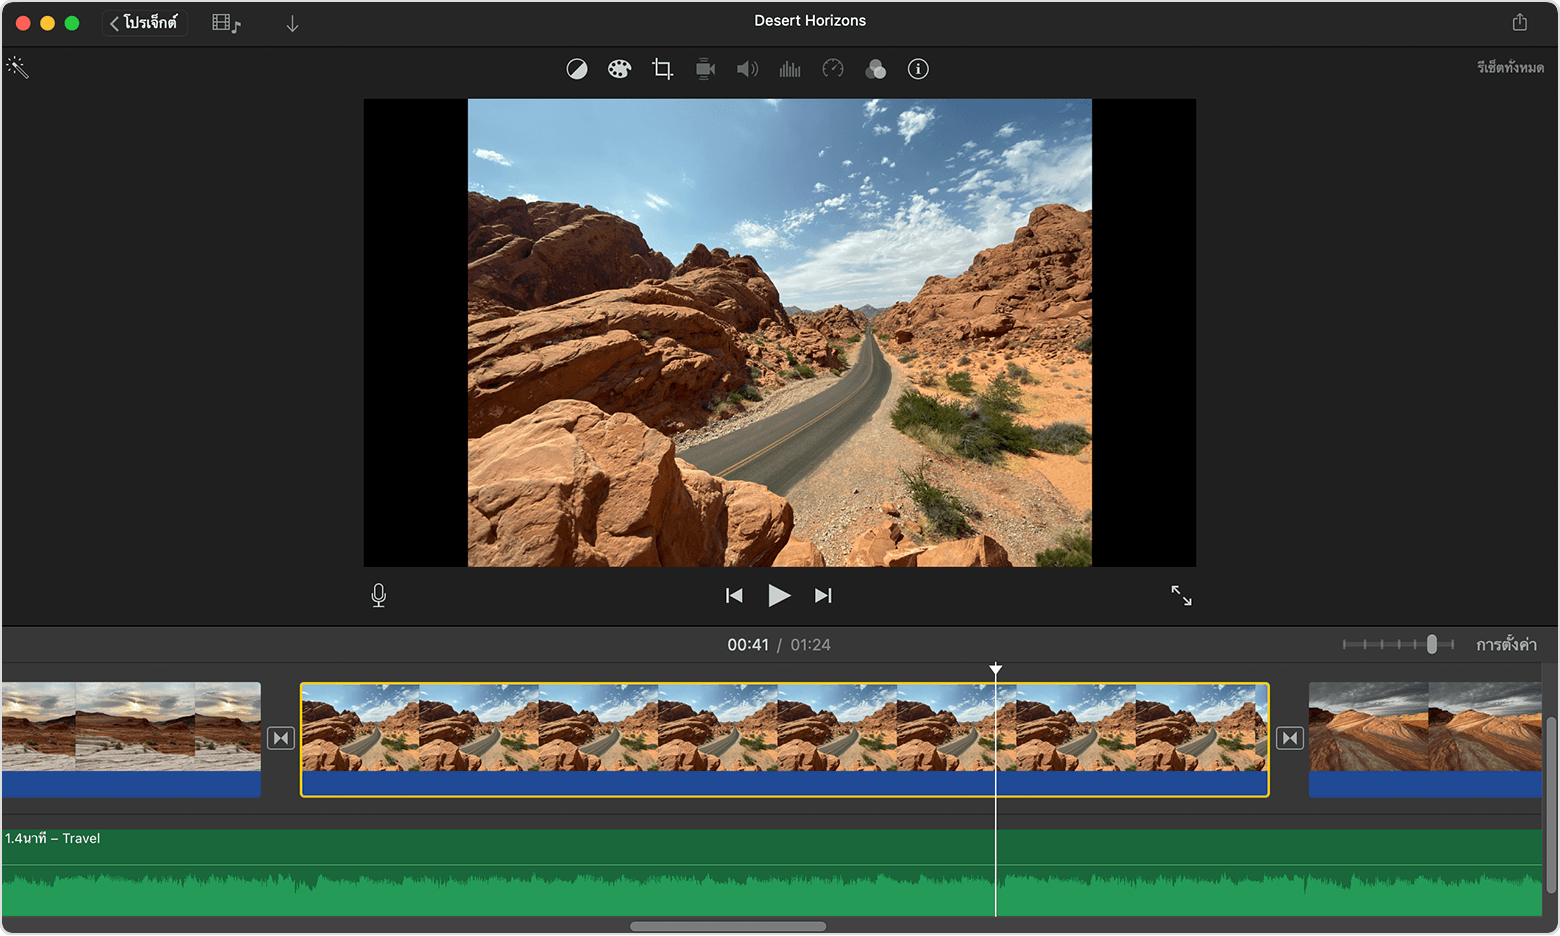 โปรเจ็กต์ iMovie ใน Mac จะเปิดขึ้นพร้อมกับคลิปวิดีโอที่เลือกไว้ในไทม์ไลน์